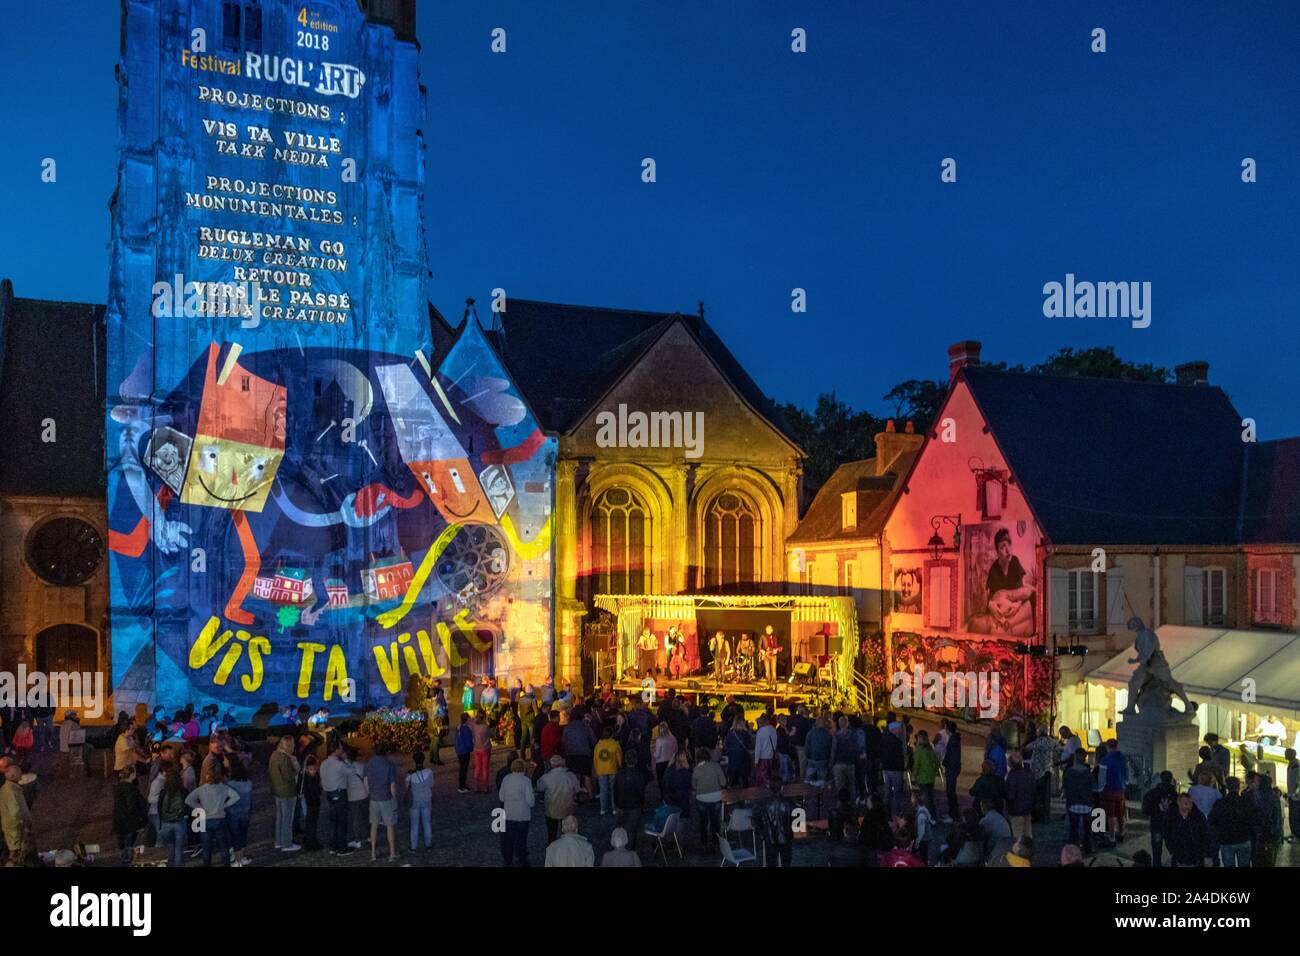 RUGL'ART kulturellen Festivals, Konzerte, riesige FOTOS UND MAPPING, STADT RUGLES, Eure, Normandie, Frankreich Stockfoto